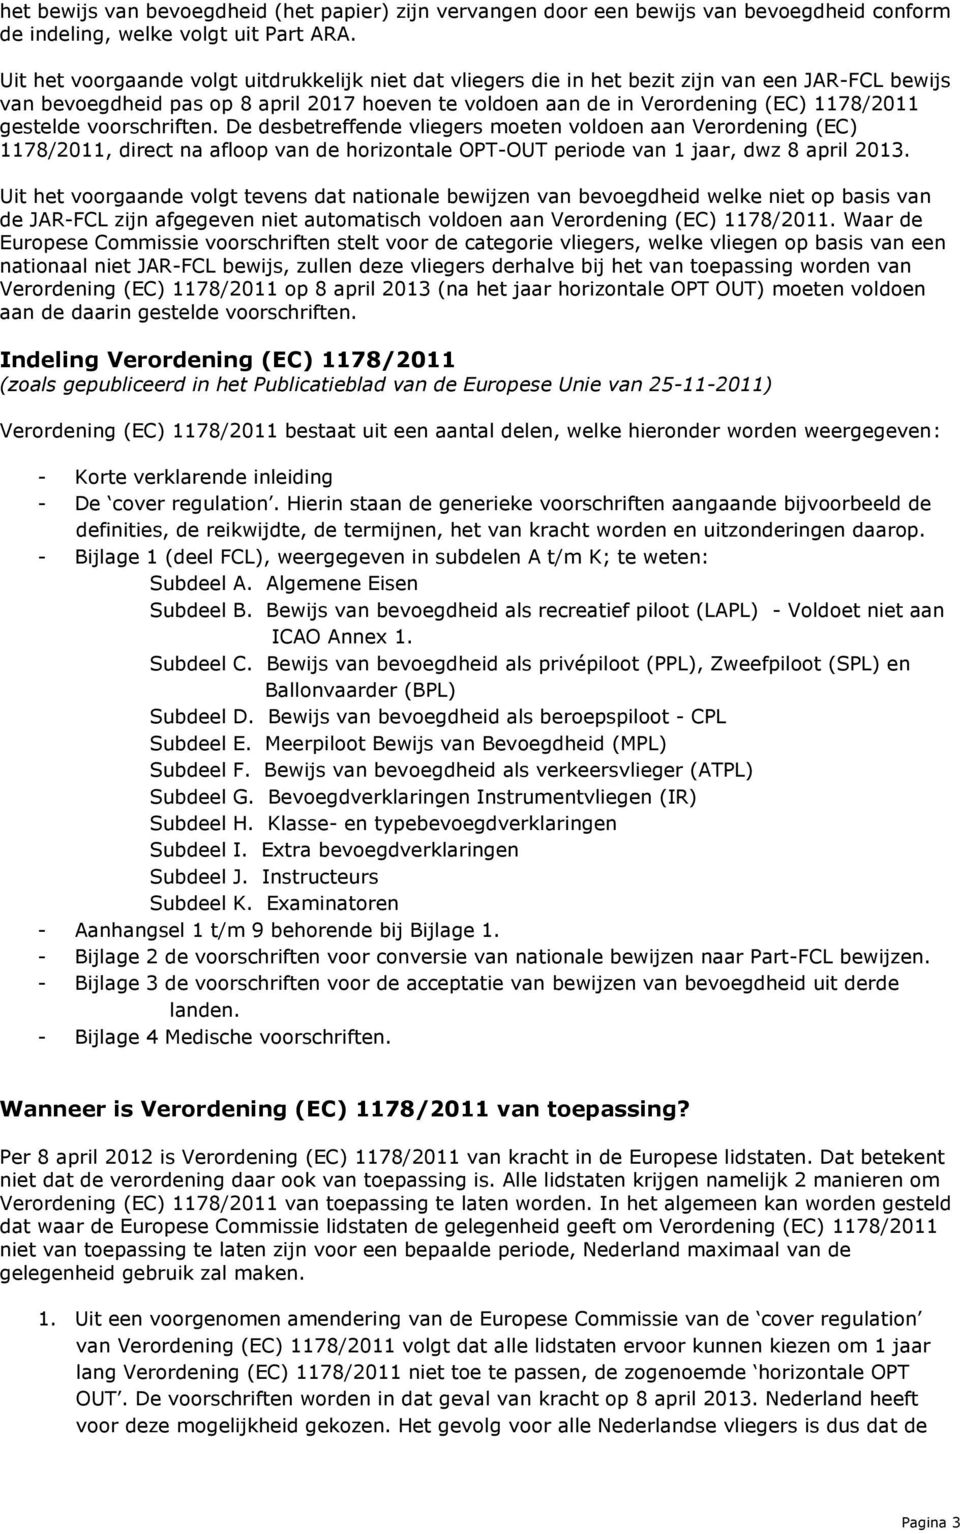 gestelde voorschriften. De desbetreffende vliegers moeten voldoen aan Verordening (EC) 1178/2011, direct na afloop van de horizontale OPT-OUT periode van 1 jaar, dwz 8 april 2013.